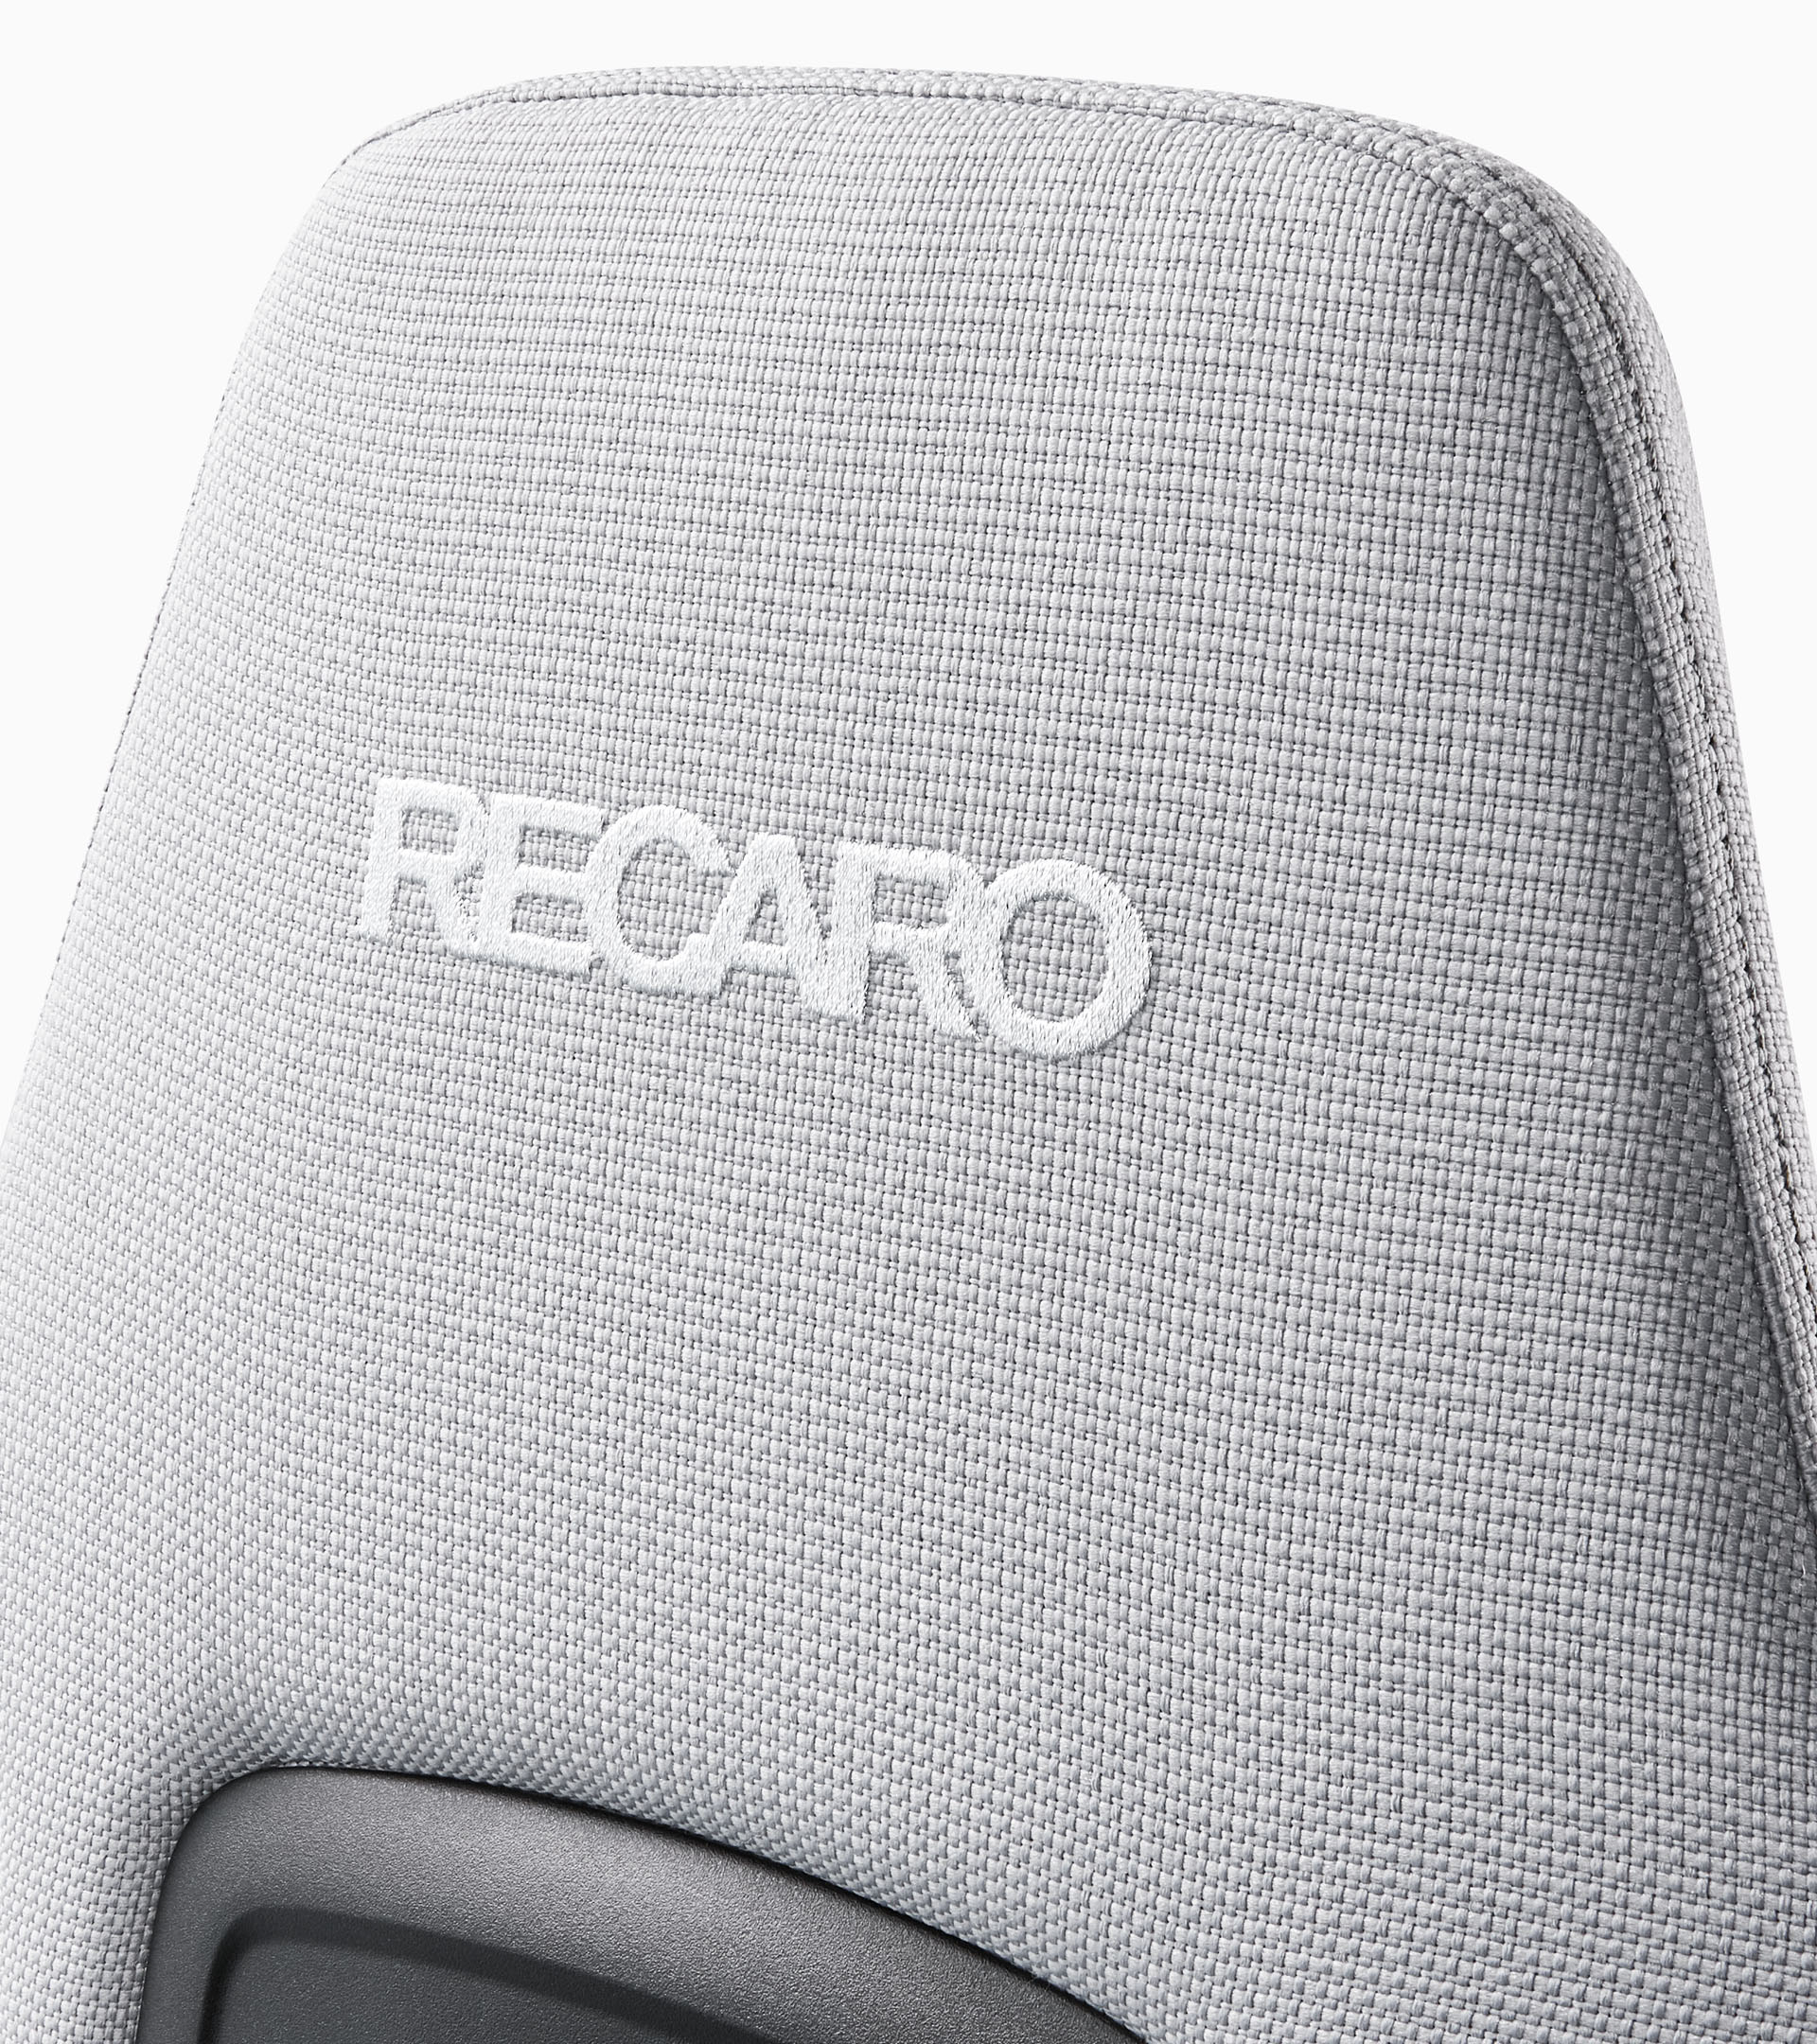 保时捷联合RECARO推出赛车外观电竞椅 售价近1.7万元 二次世界 第8张